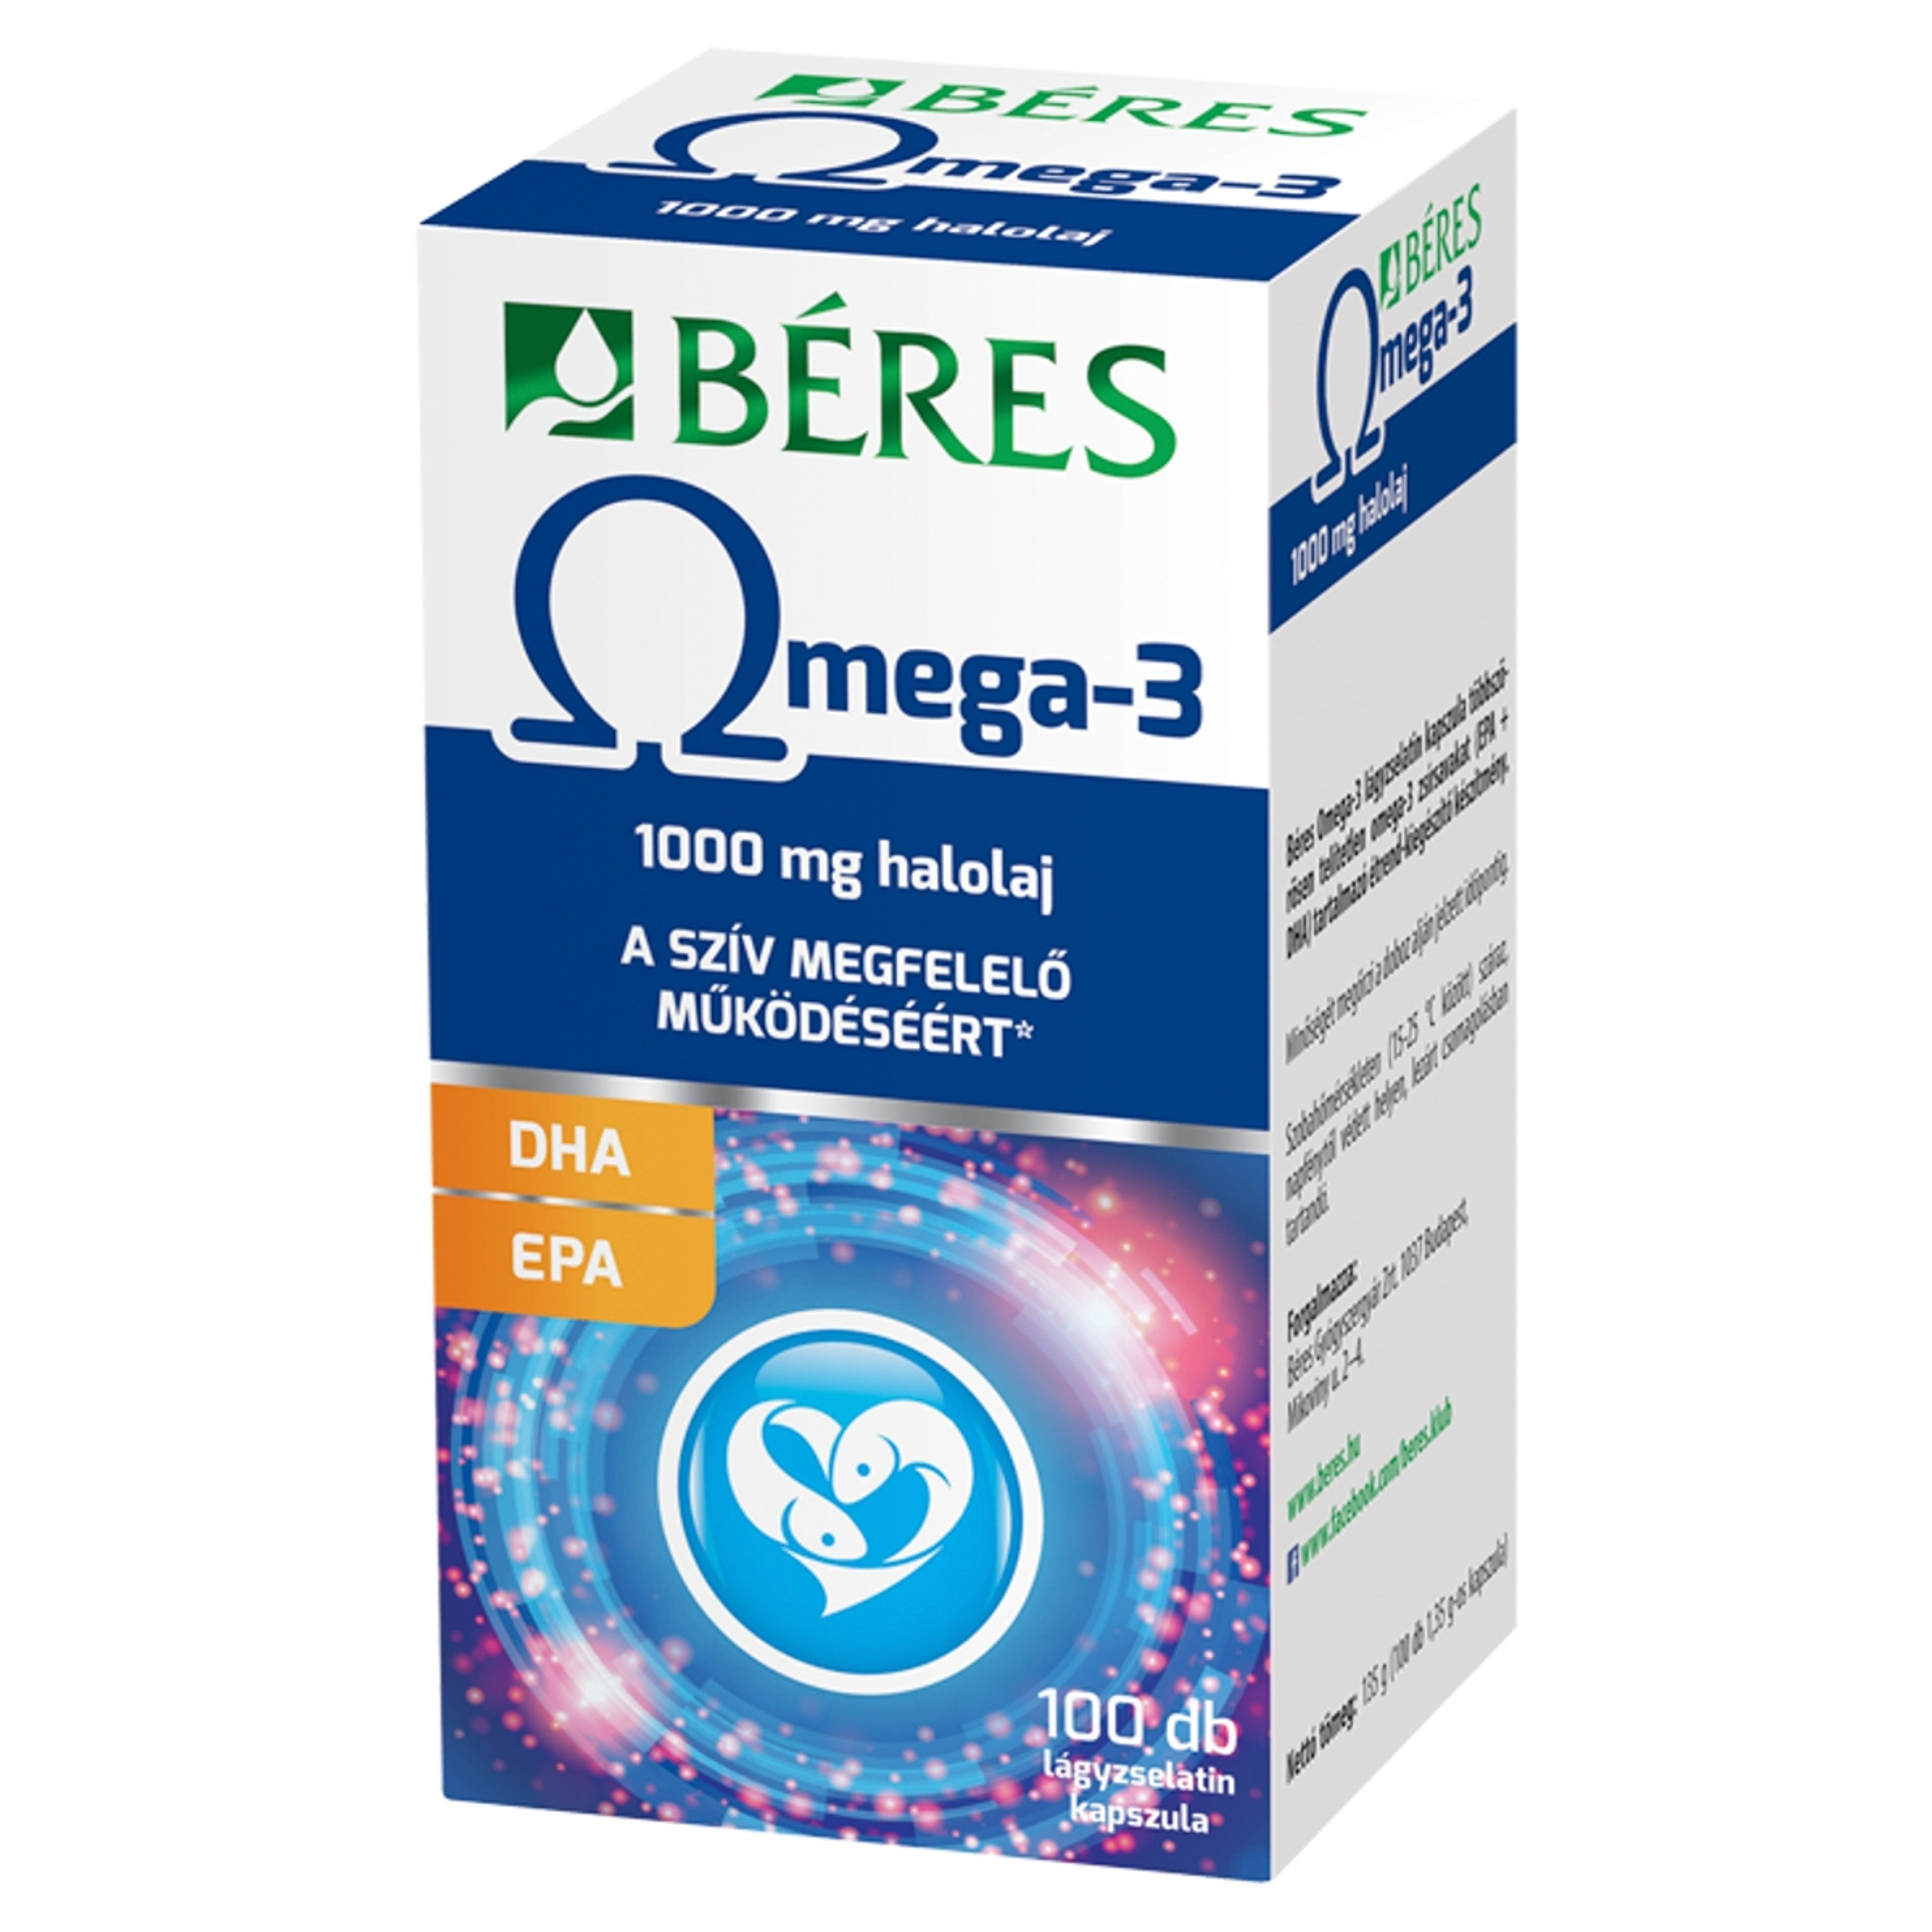 Béres Omega 3 lágyzselatin kapszula - 100 db-2